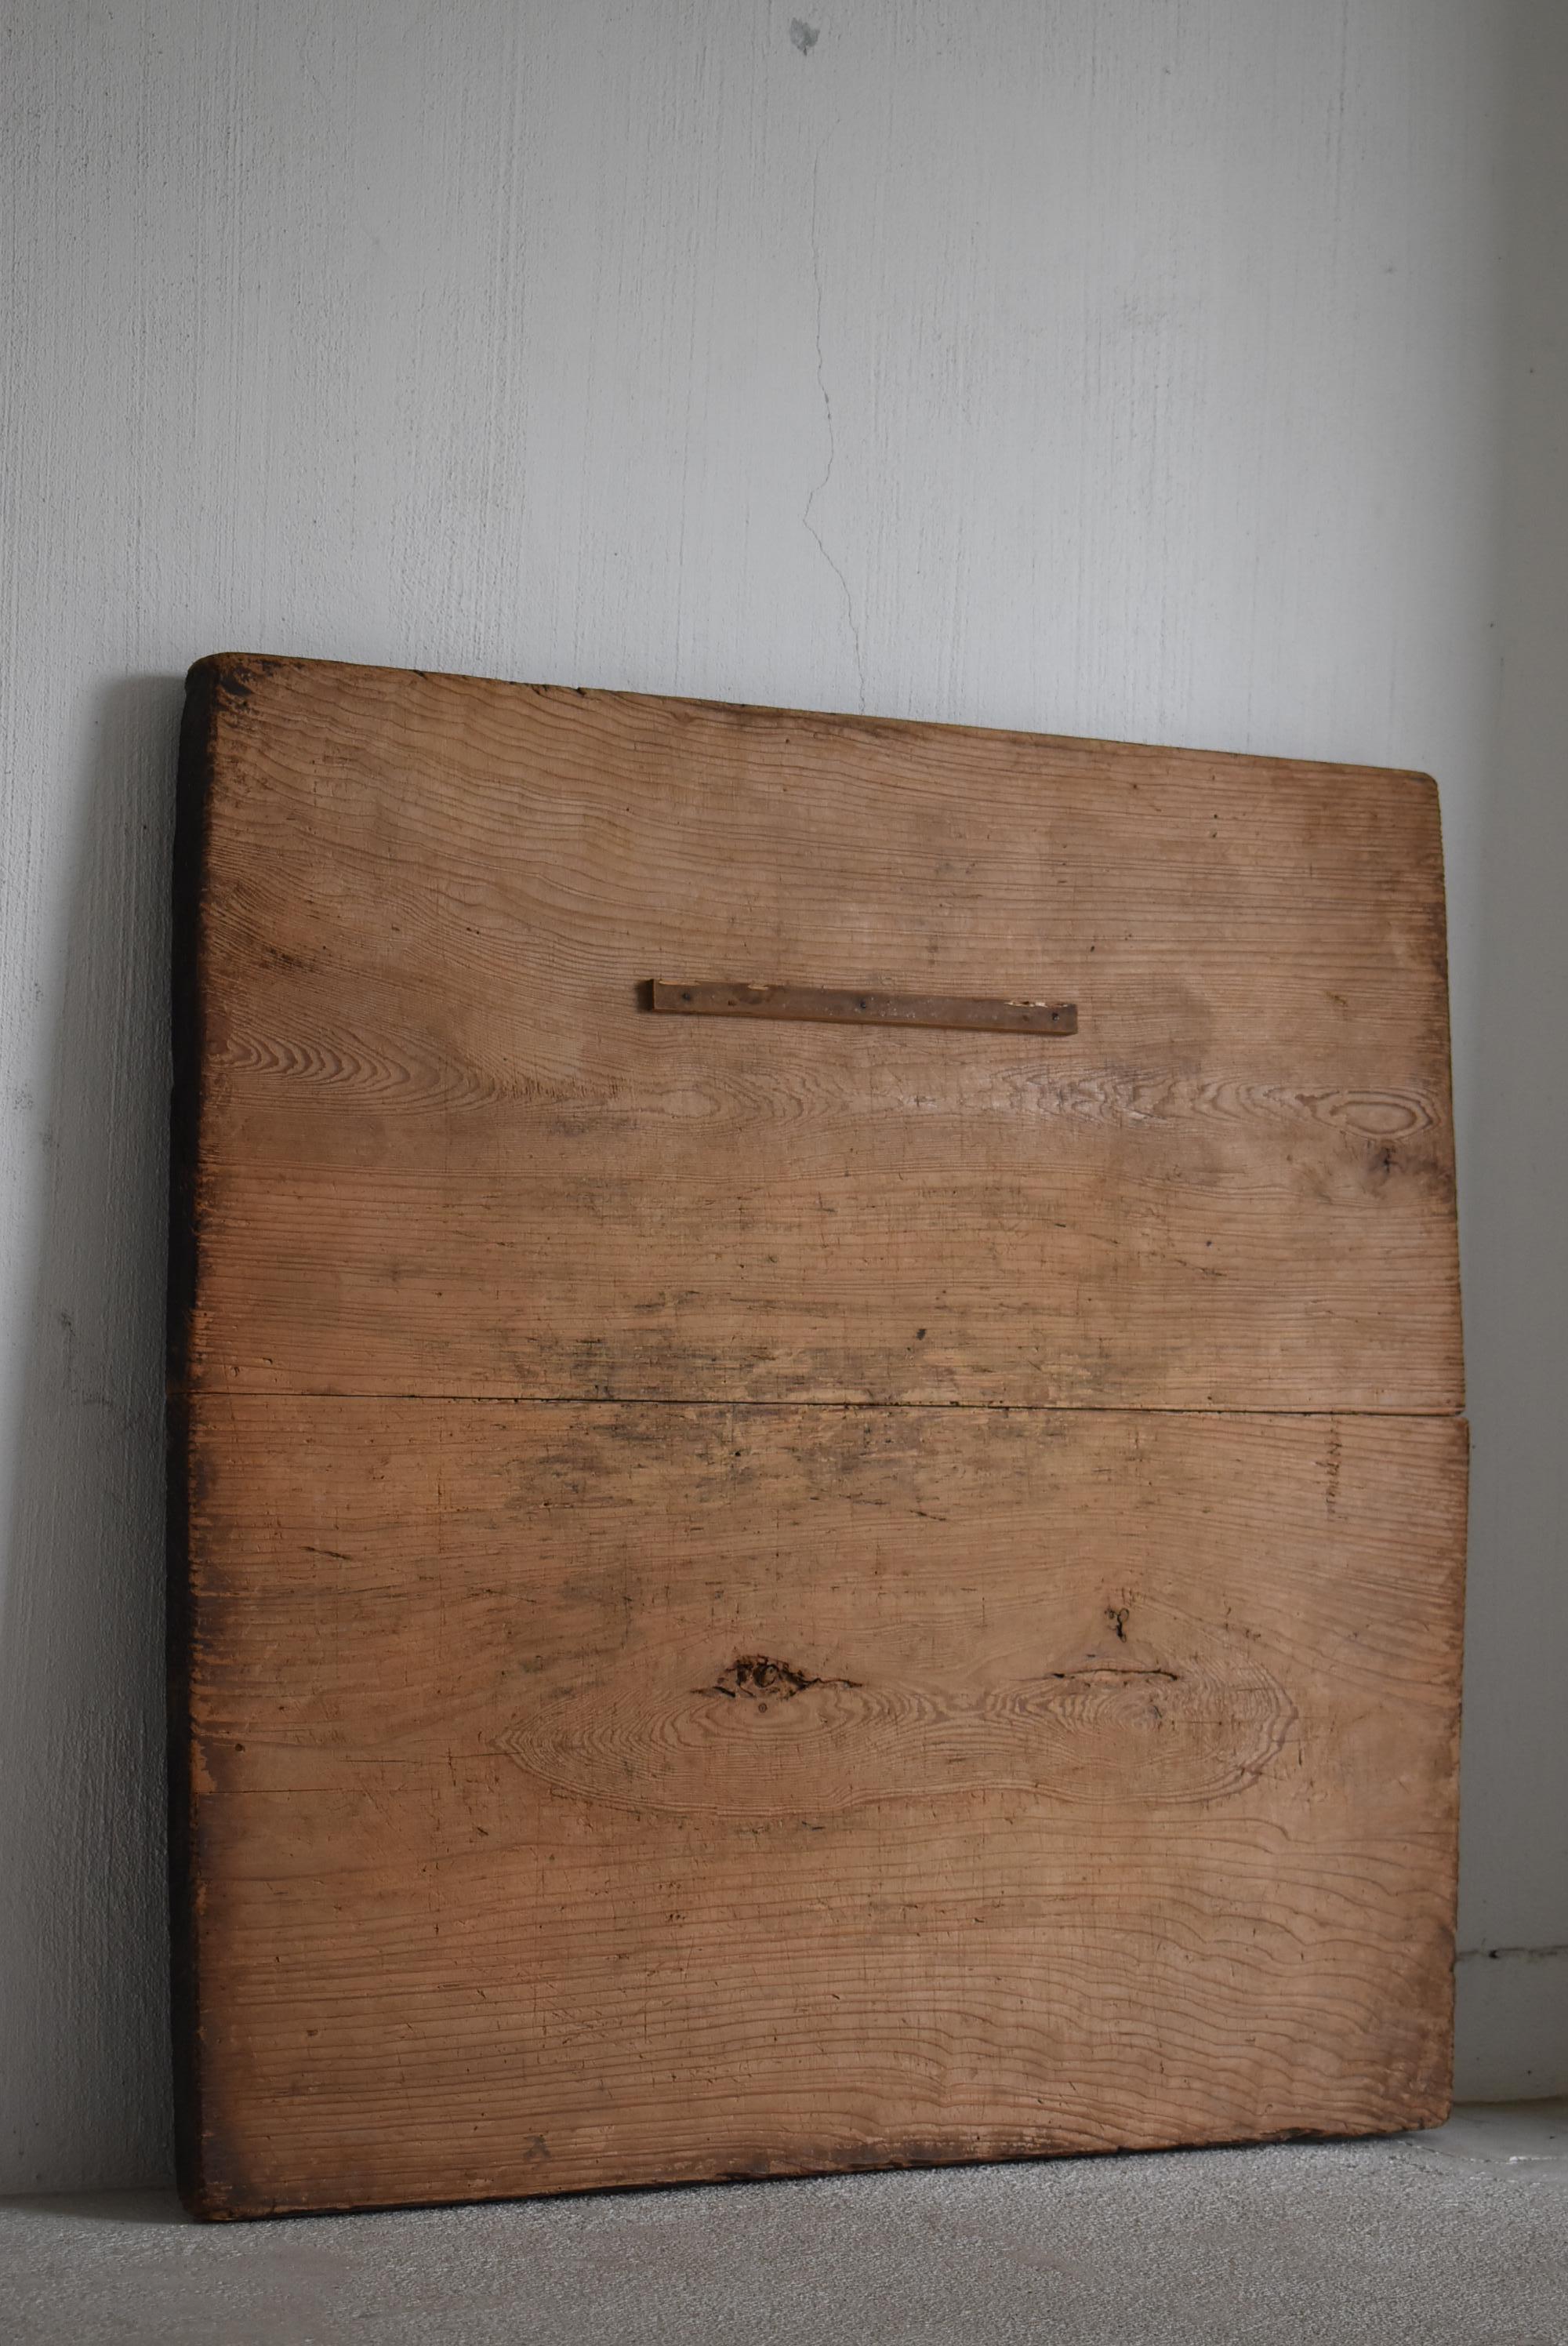 Japanese Antique Wabi Sabi Wooden Board 1860s-1900s / Exhibition Stand Mingei 8